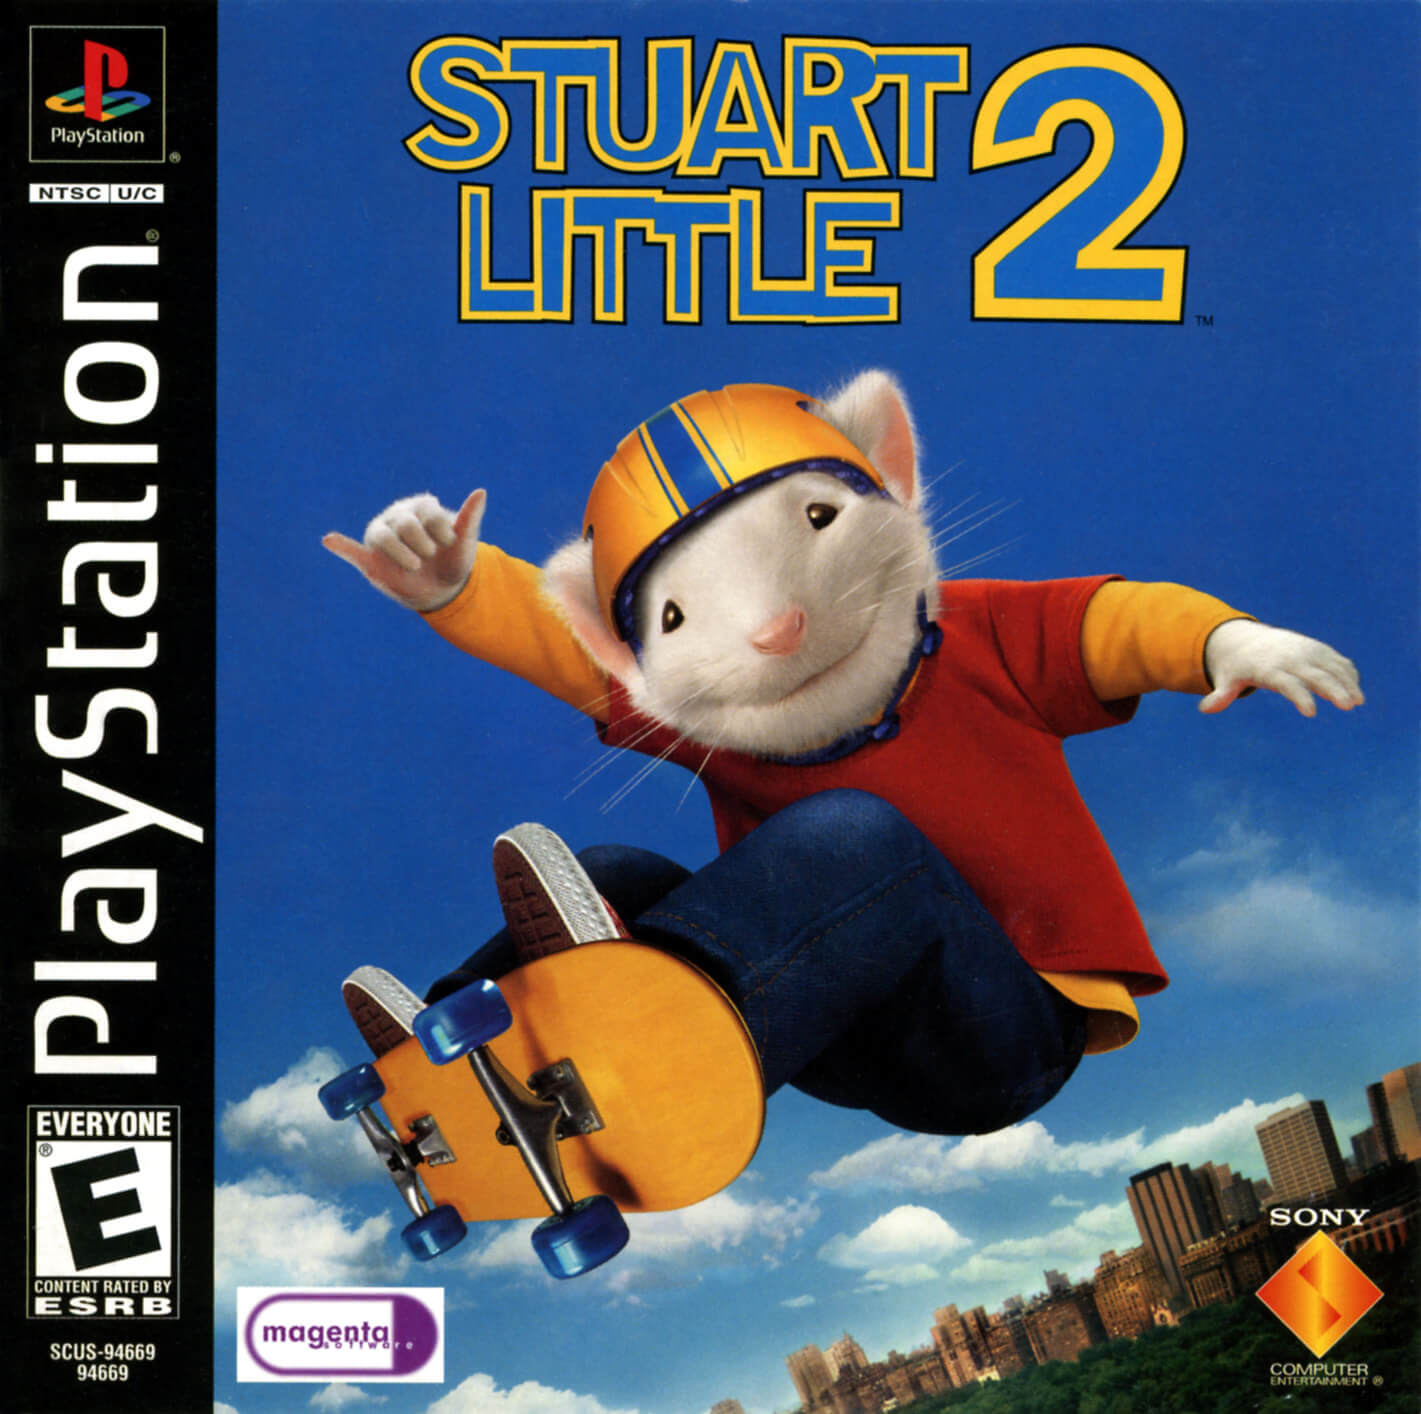 Стюарт литтл игра. Stuart little 2 (игра). Stuart little игра. Stuart little 2 ps1. Стюарт Литтл ps1.